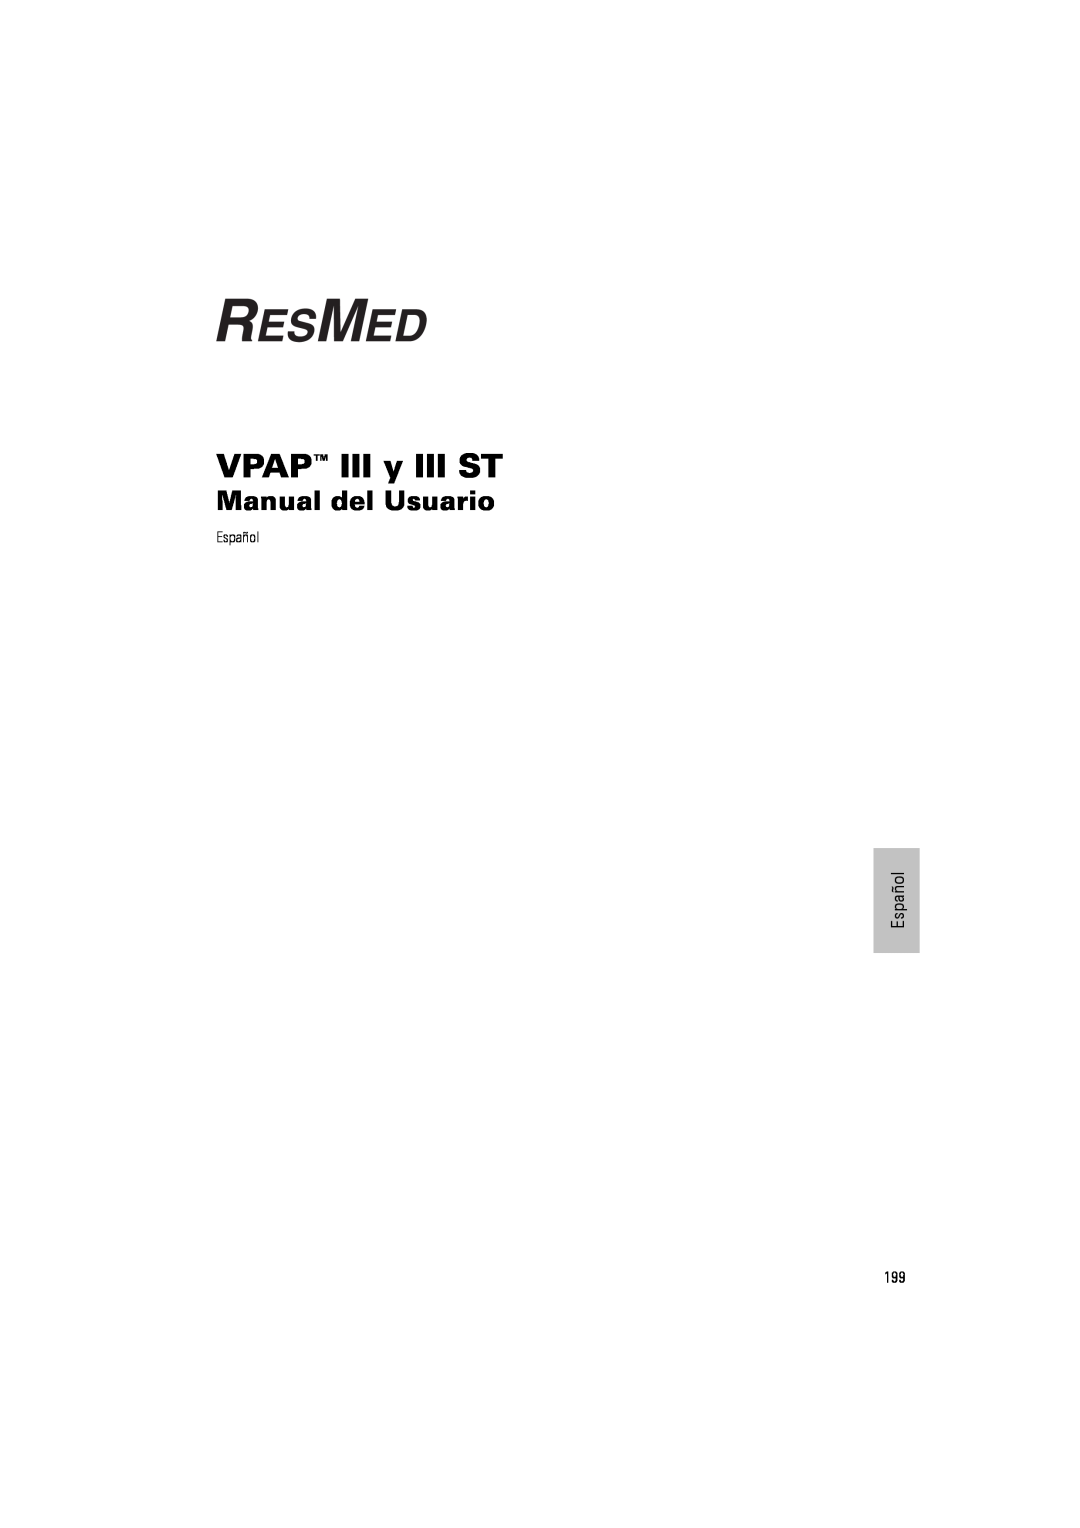 ResMed III & III ST user manual VPAP III y III ST, Manual del Usuario 